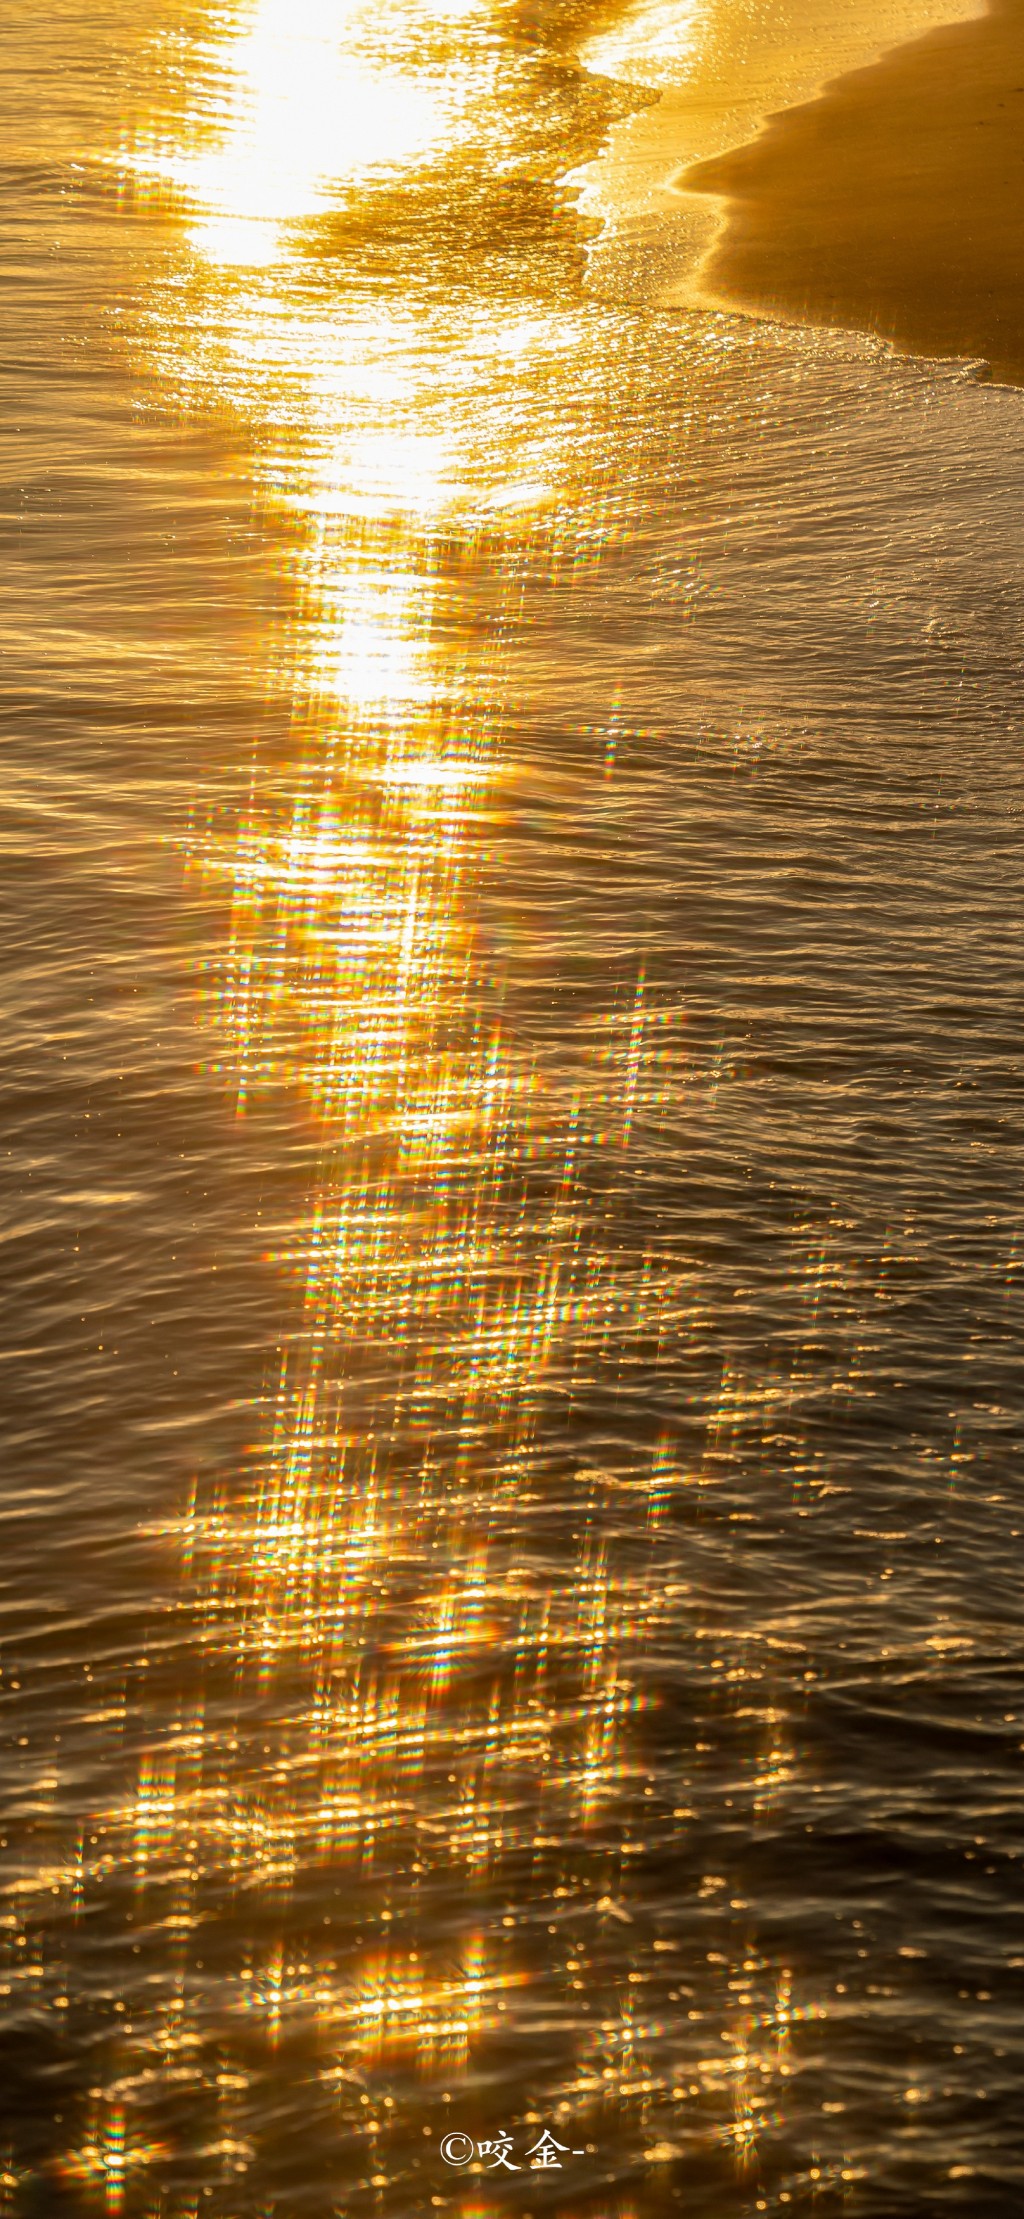 日落黄昏海边金光风景手机壁纸